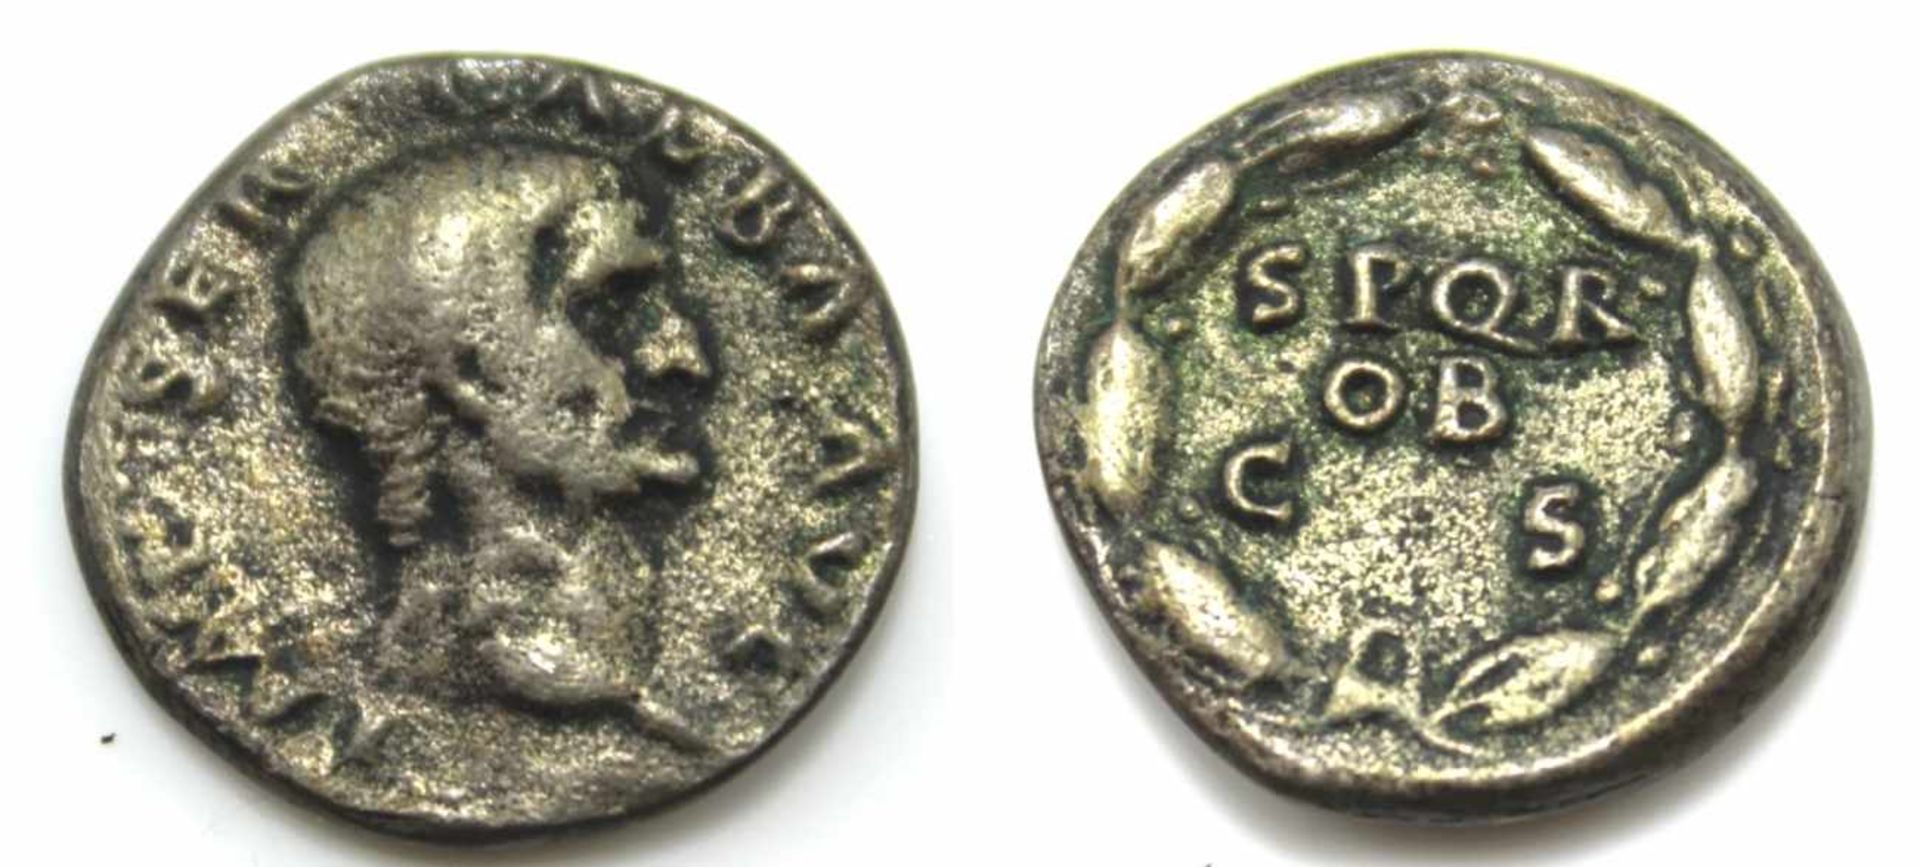 Münze - Römische Kaiserzeit Denar, Silber, Prägezeit Juli 68 - Jan. 69, Vorderseite: Kaiser Galba,